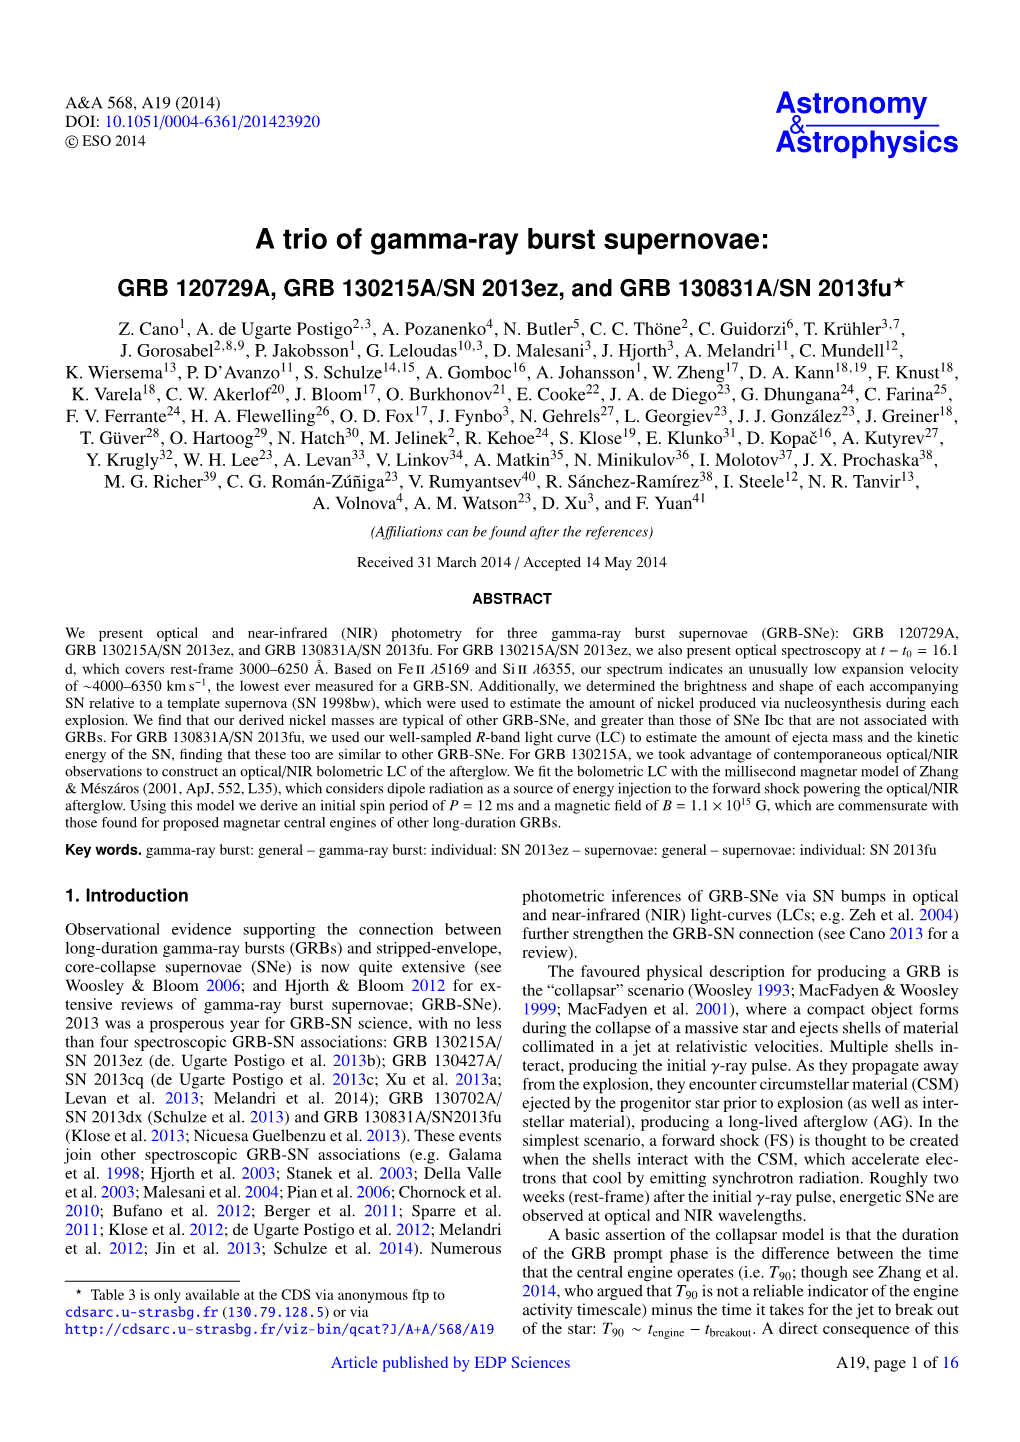 A Trio of Gamma-Ray Burst Supernovae: GRB 120729A, GRB 130215A/SN 2013Ez, and GRB 130831A/SN 2013Fu?